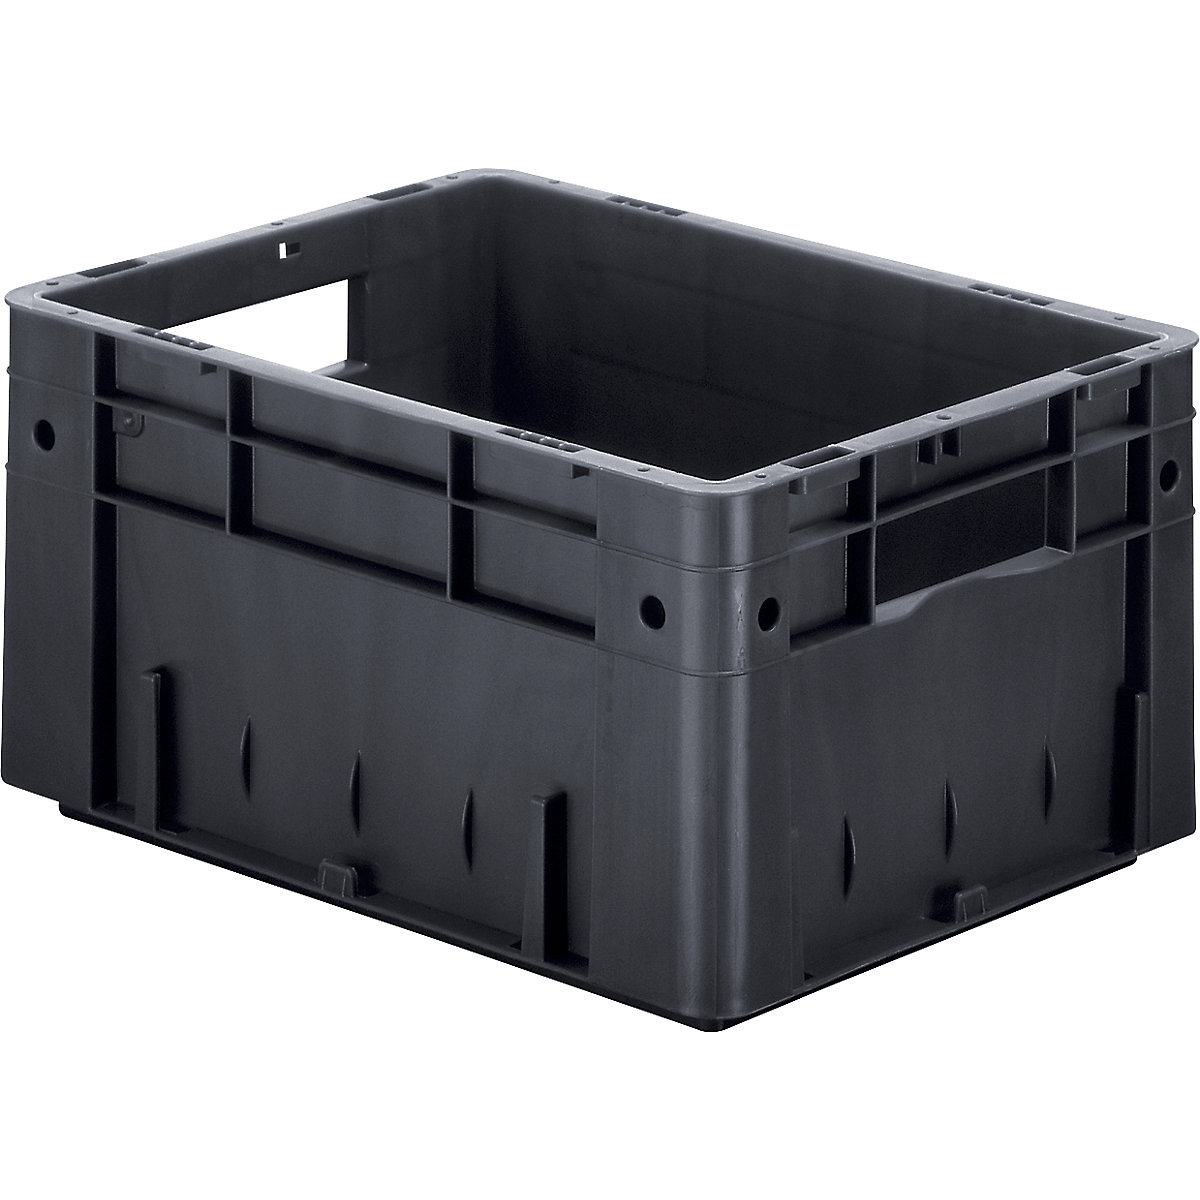 Euro Container Grey  Ladder storage, Storage, Storage boxes